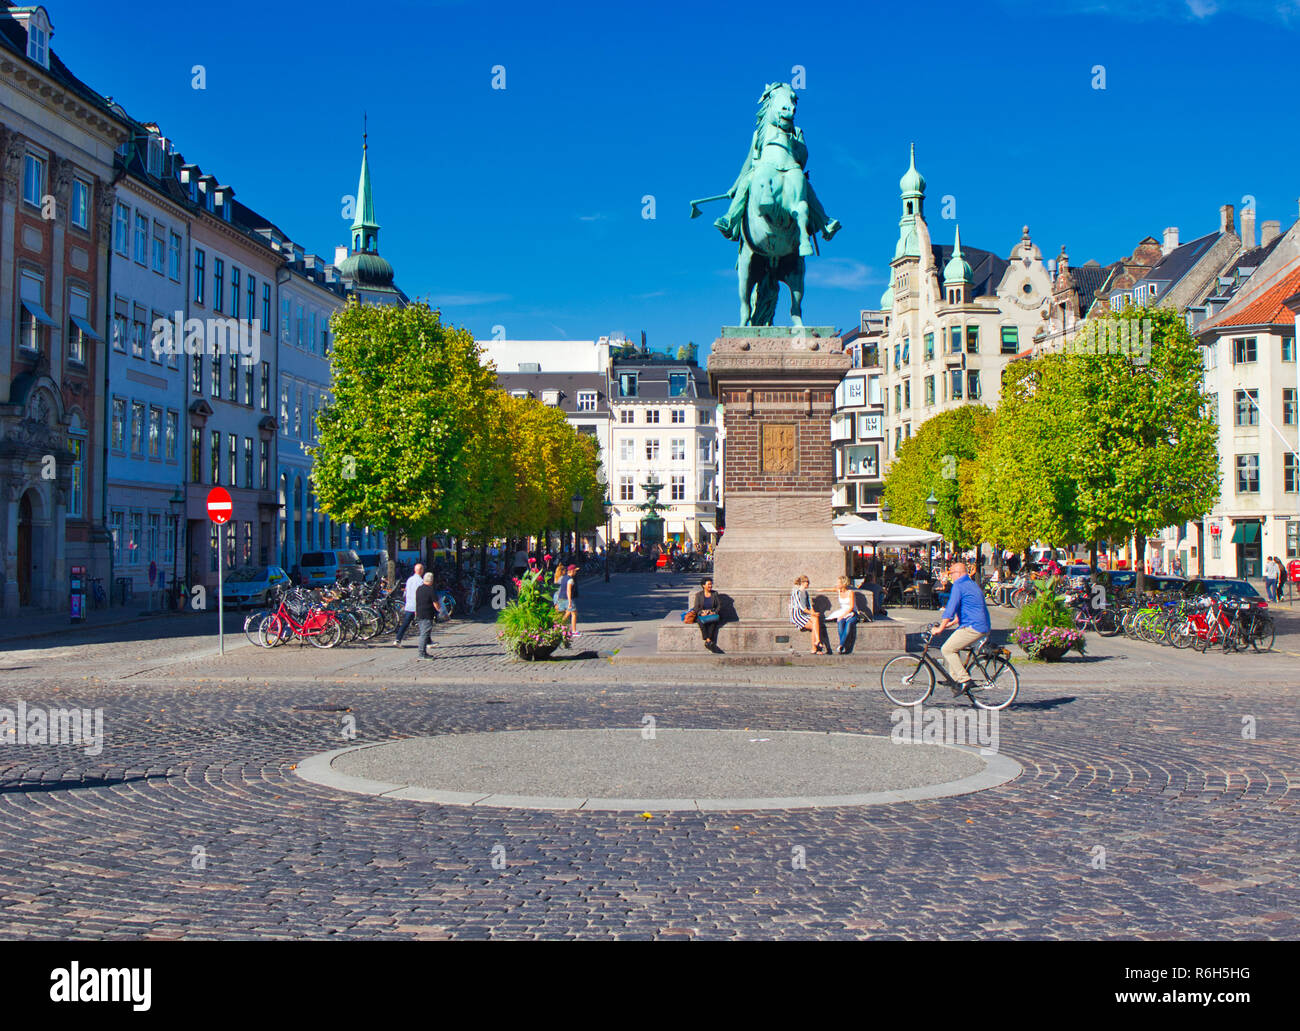 Statue équestre en bronze de l'évêque Absalon le fondateur de Copenhague, Hojbro Plads, Indre par, Copenhague, Danemark, Scandinavie Banque D'Images